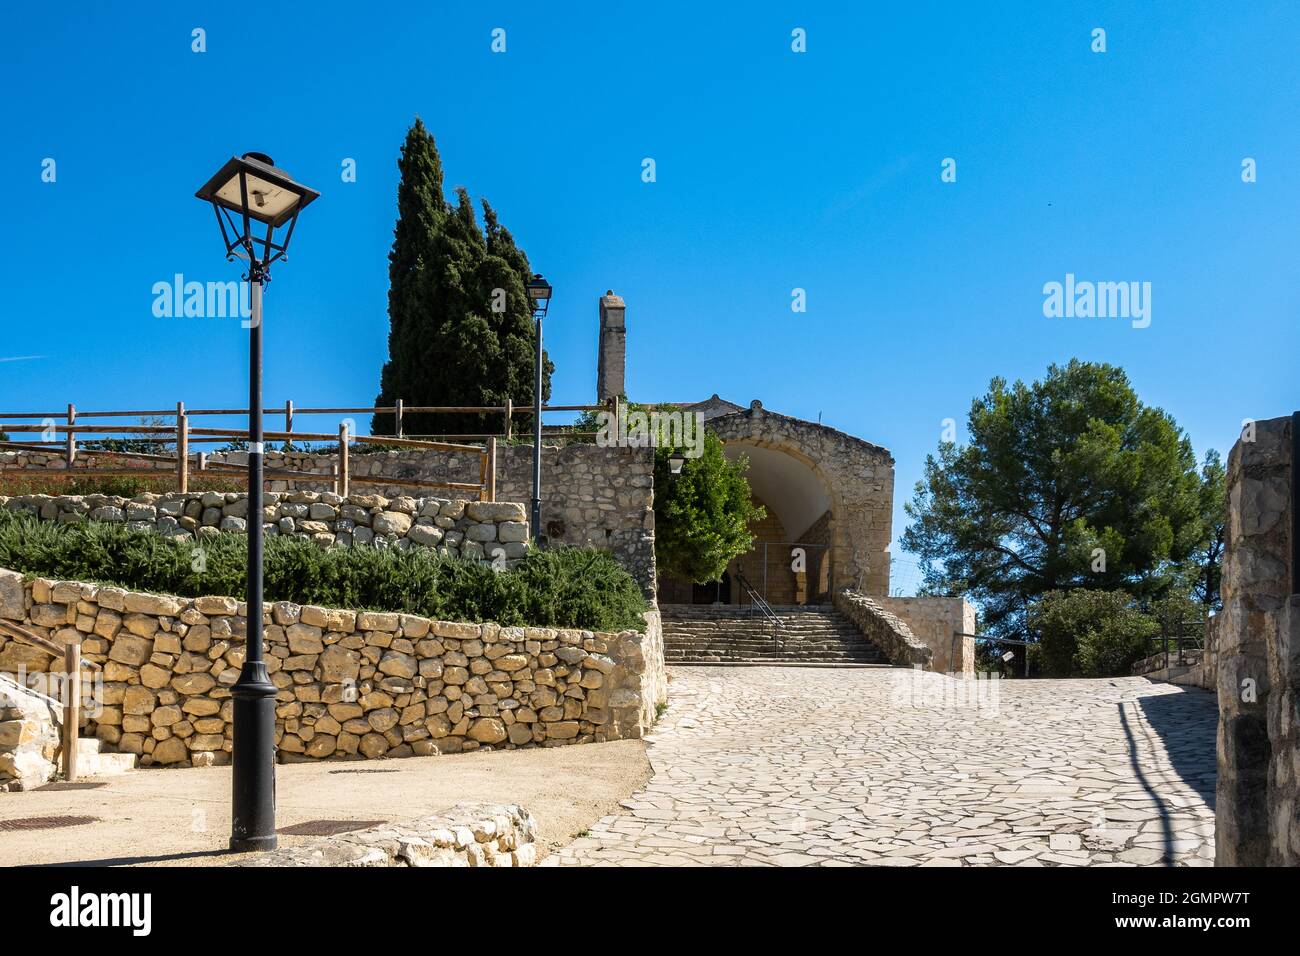 Pantano de Foix y Castellet village in Barcelona, Catalonia, Spain Stock Photo